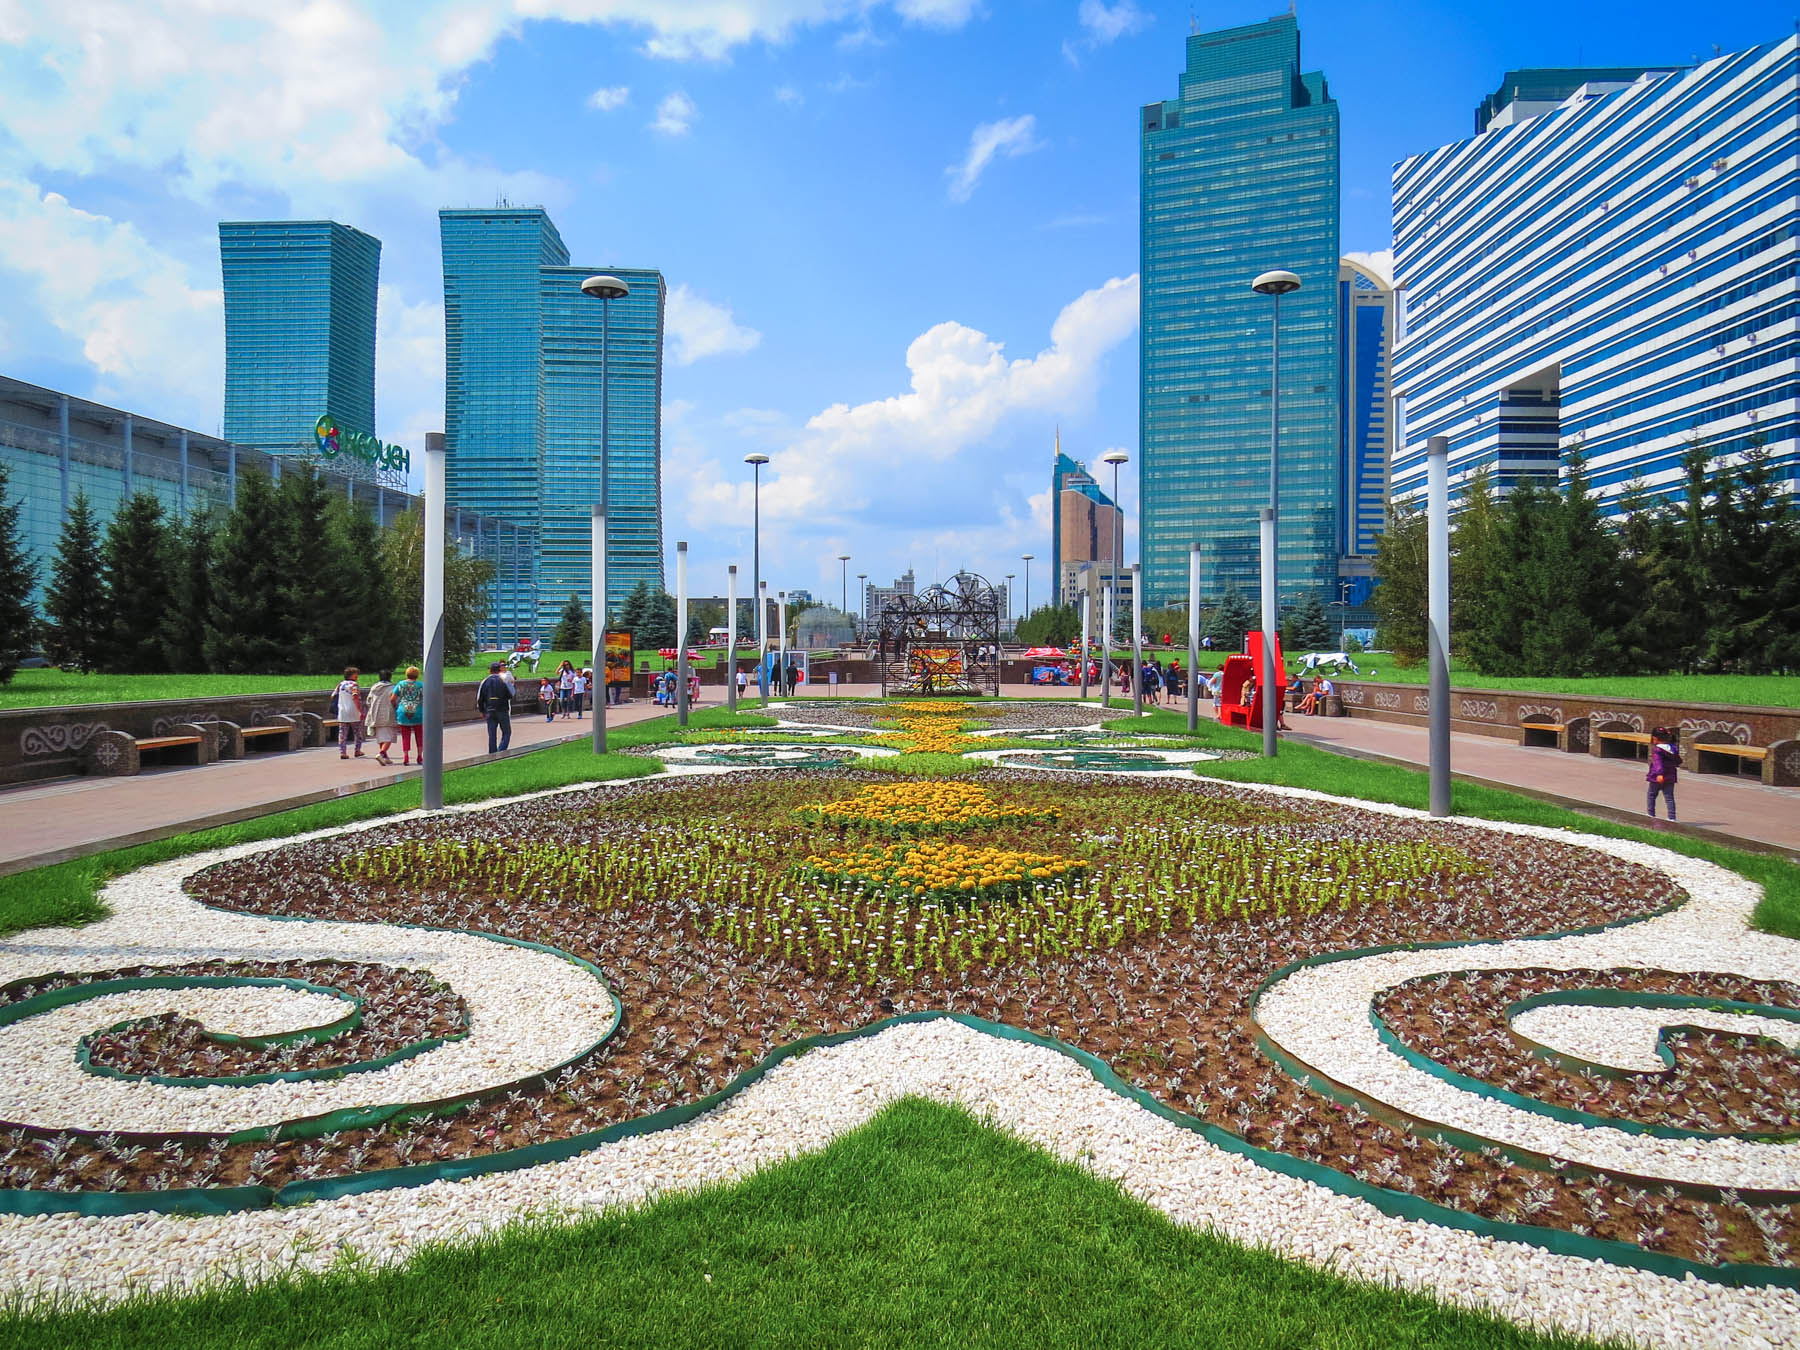 High Resolution Wallpaper | Astana 1800x1350 px